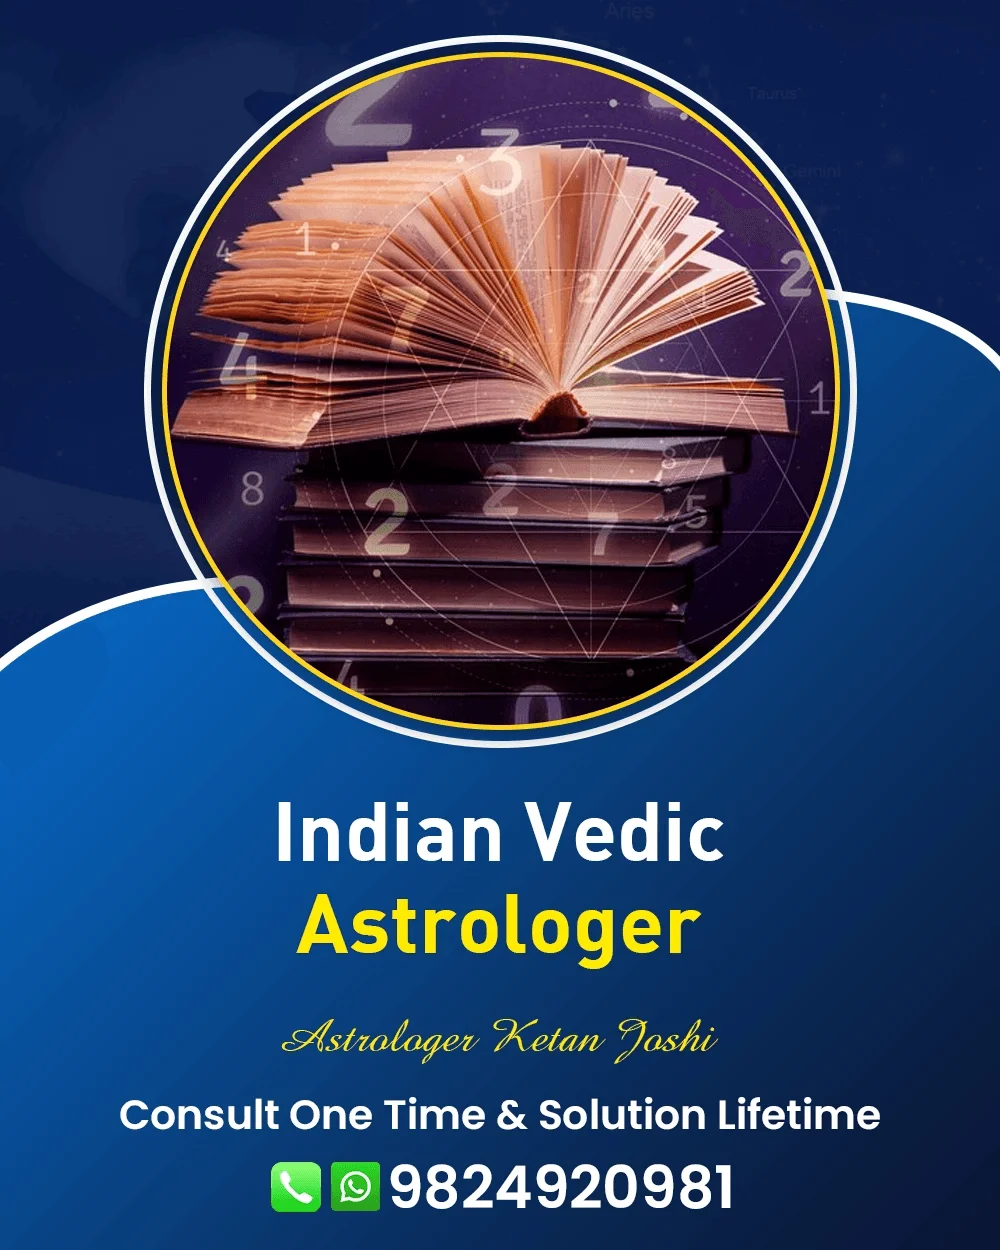 Best Astrologer In Pune